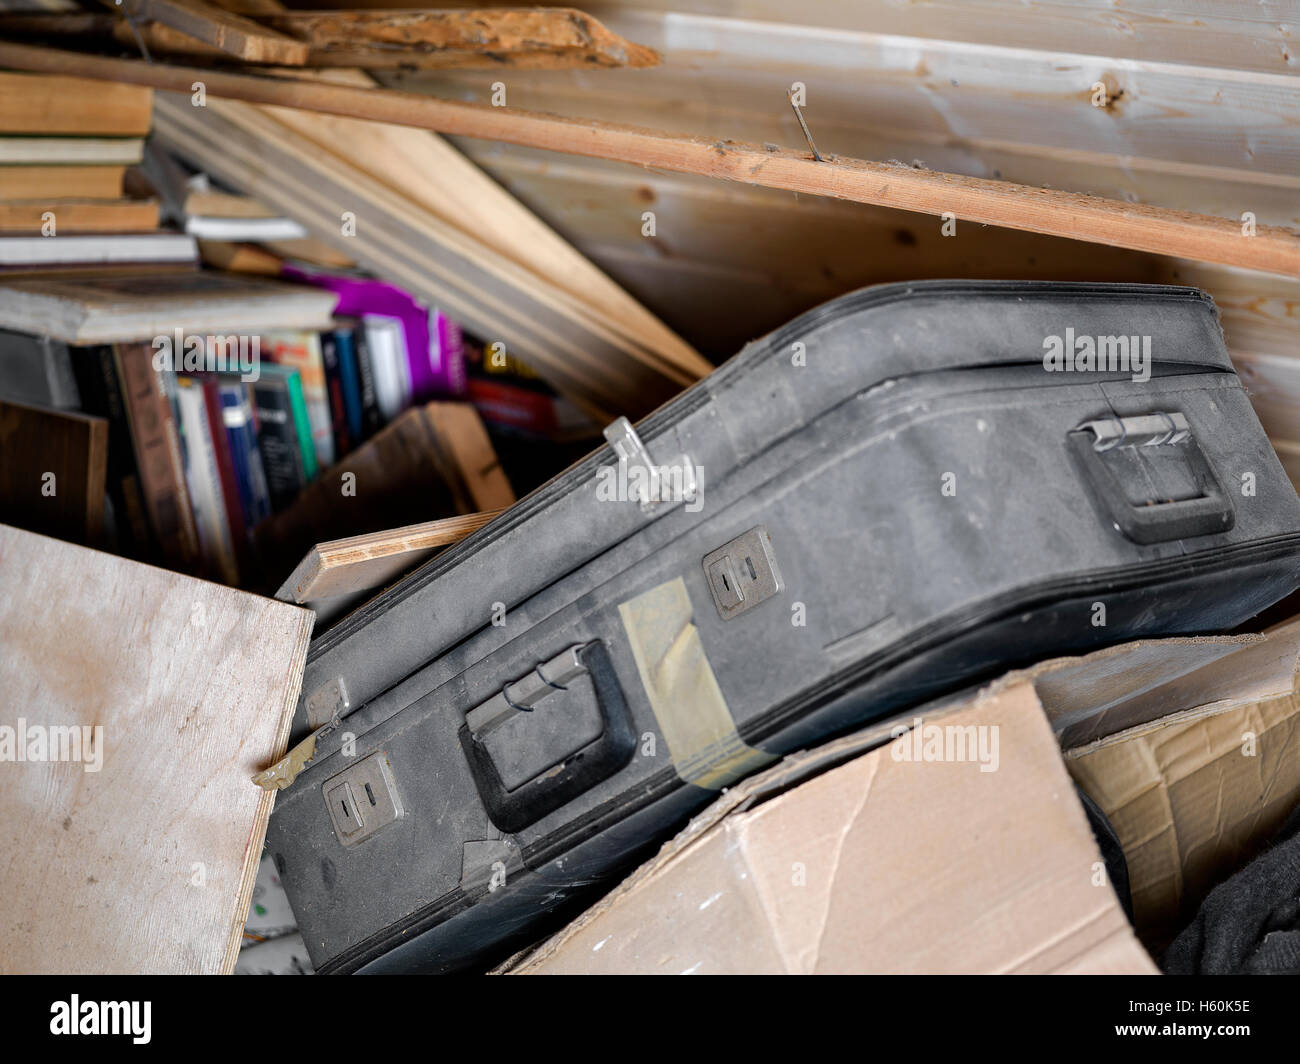 Valigia polveroso e altre cose inutili in un ripostiglio, focus particolare indoor shot Foto Stock